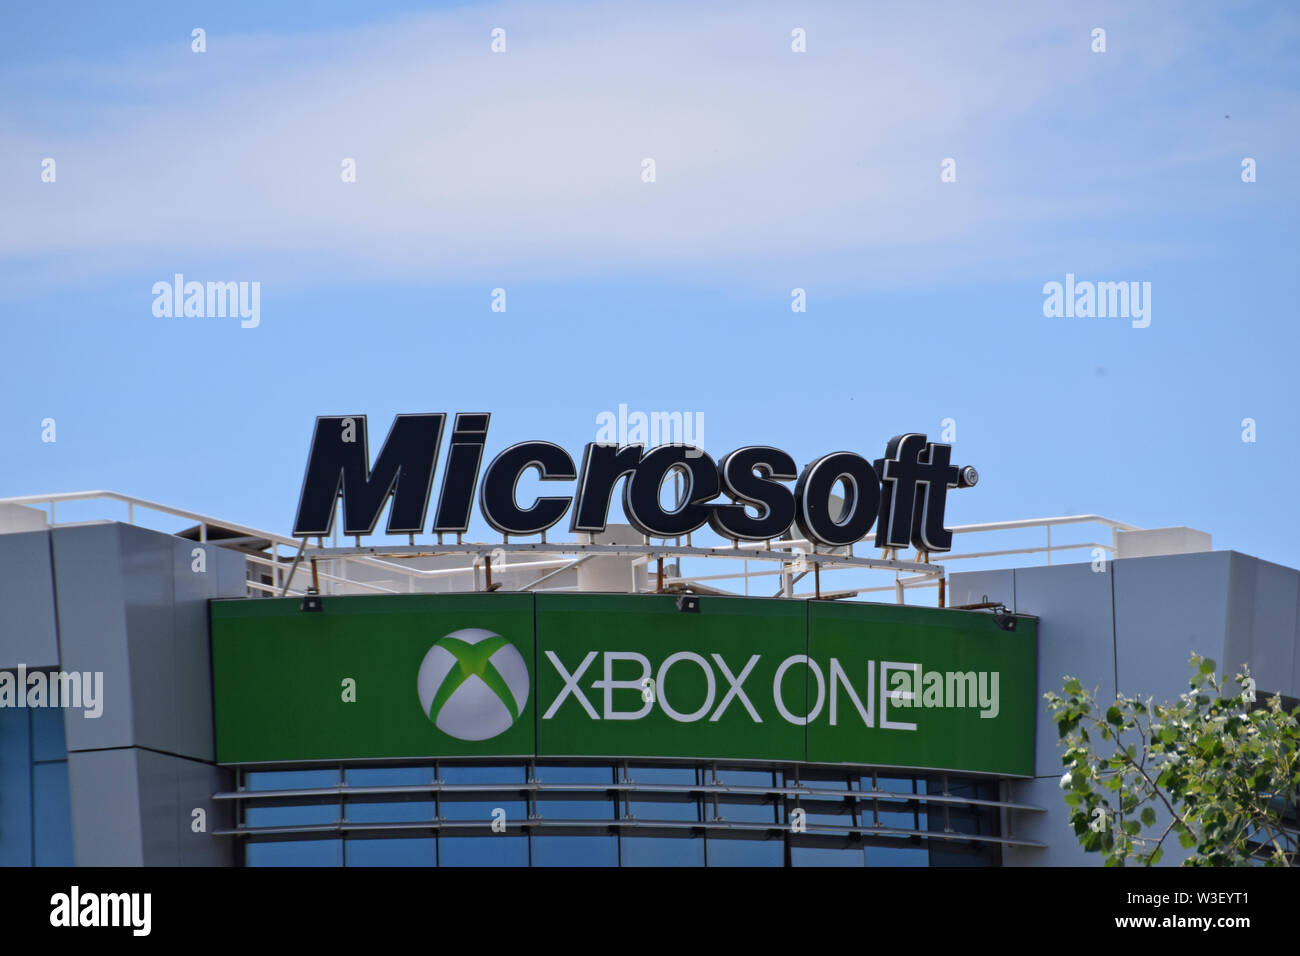 Atenas, Grecia - Junio 3, 2015: Microsoft corporation logo y una consola Xbox firmar en edificio de oficinas. Foto de stock